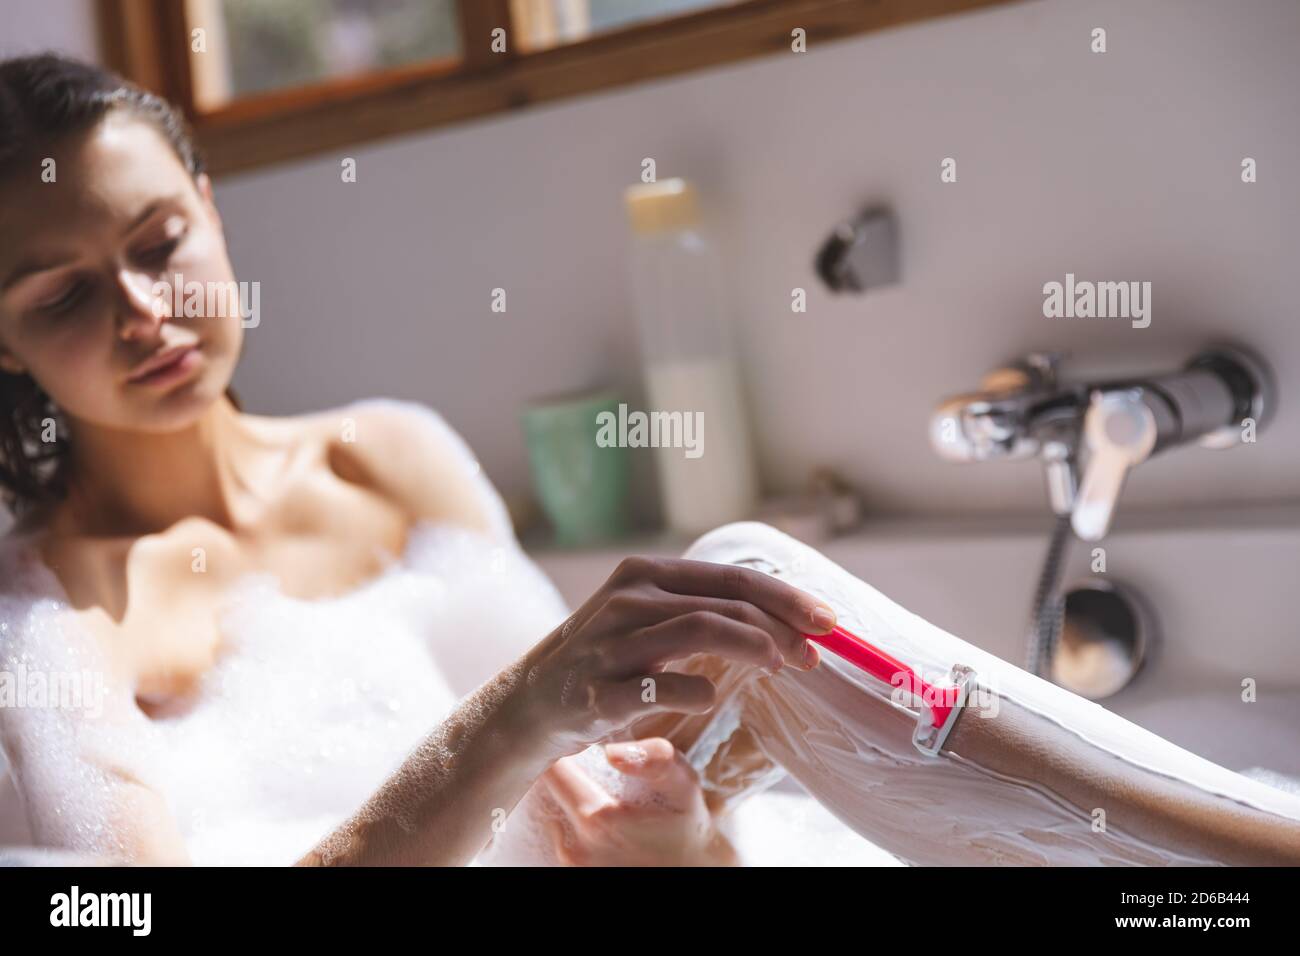 Mujer afeitándose las piernas en la bañera Foto de stock